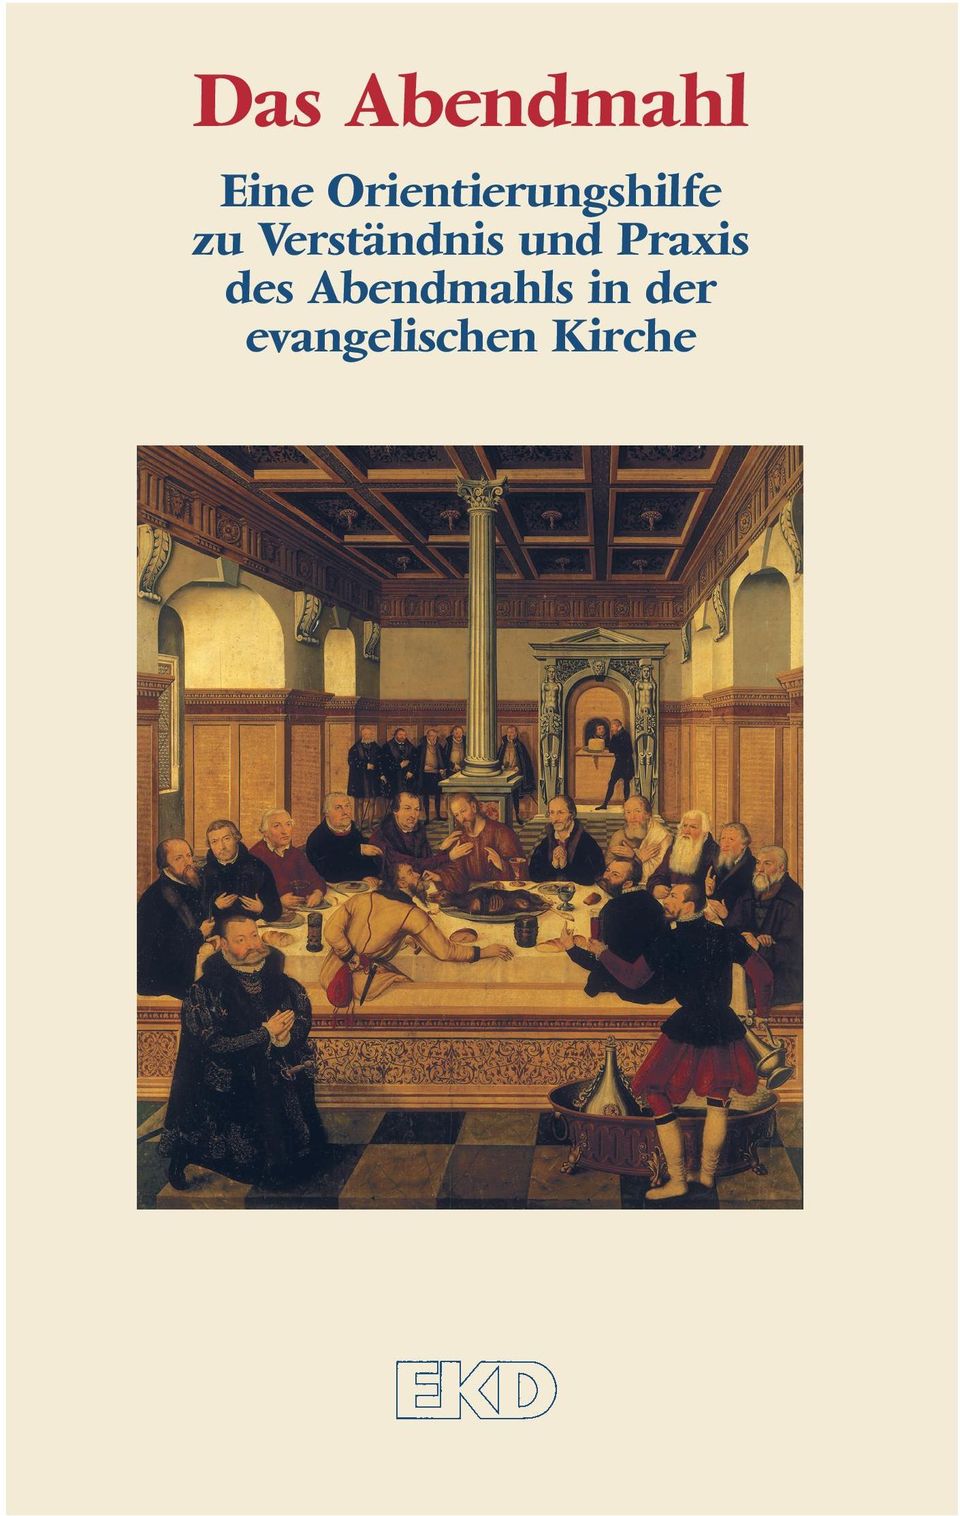 in der evangelischen Kirche ISBN 978-3-579-02378-6 www.gtvh.